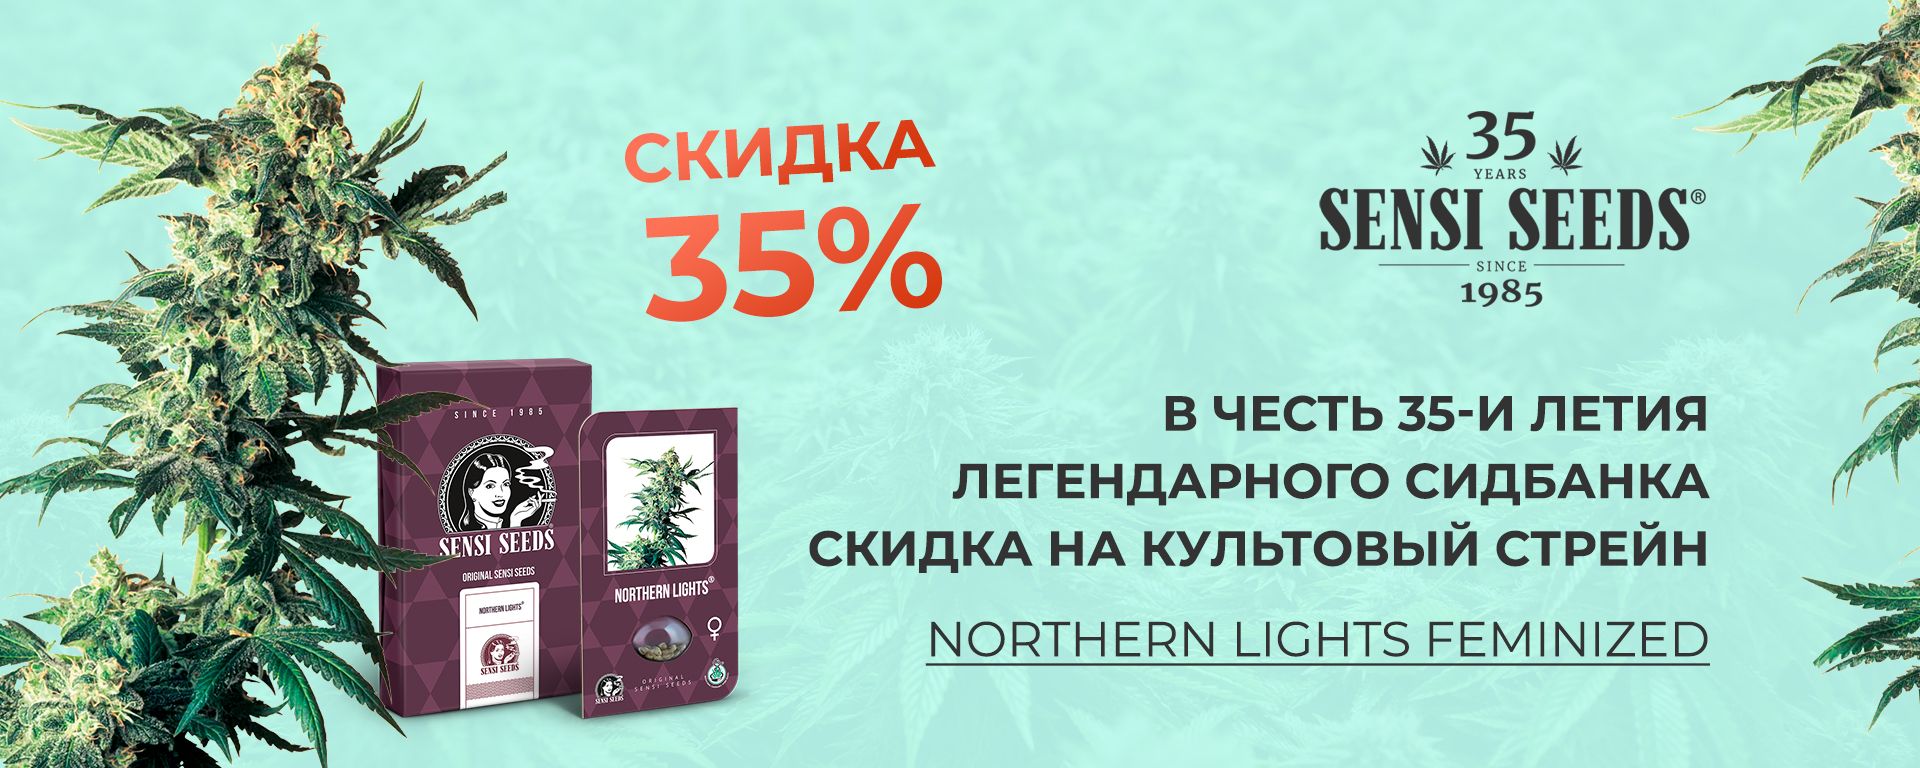 Купить элитные семена конопли в украине как вывести быстрее марихуану с организма